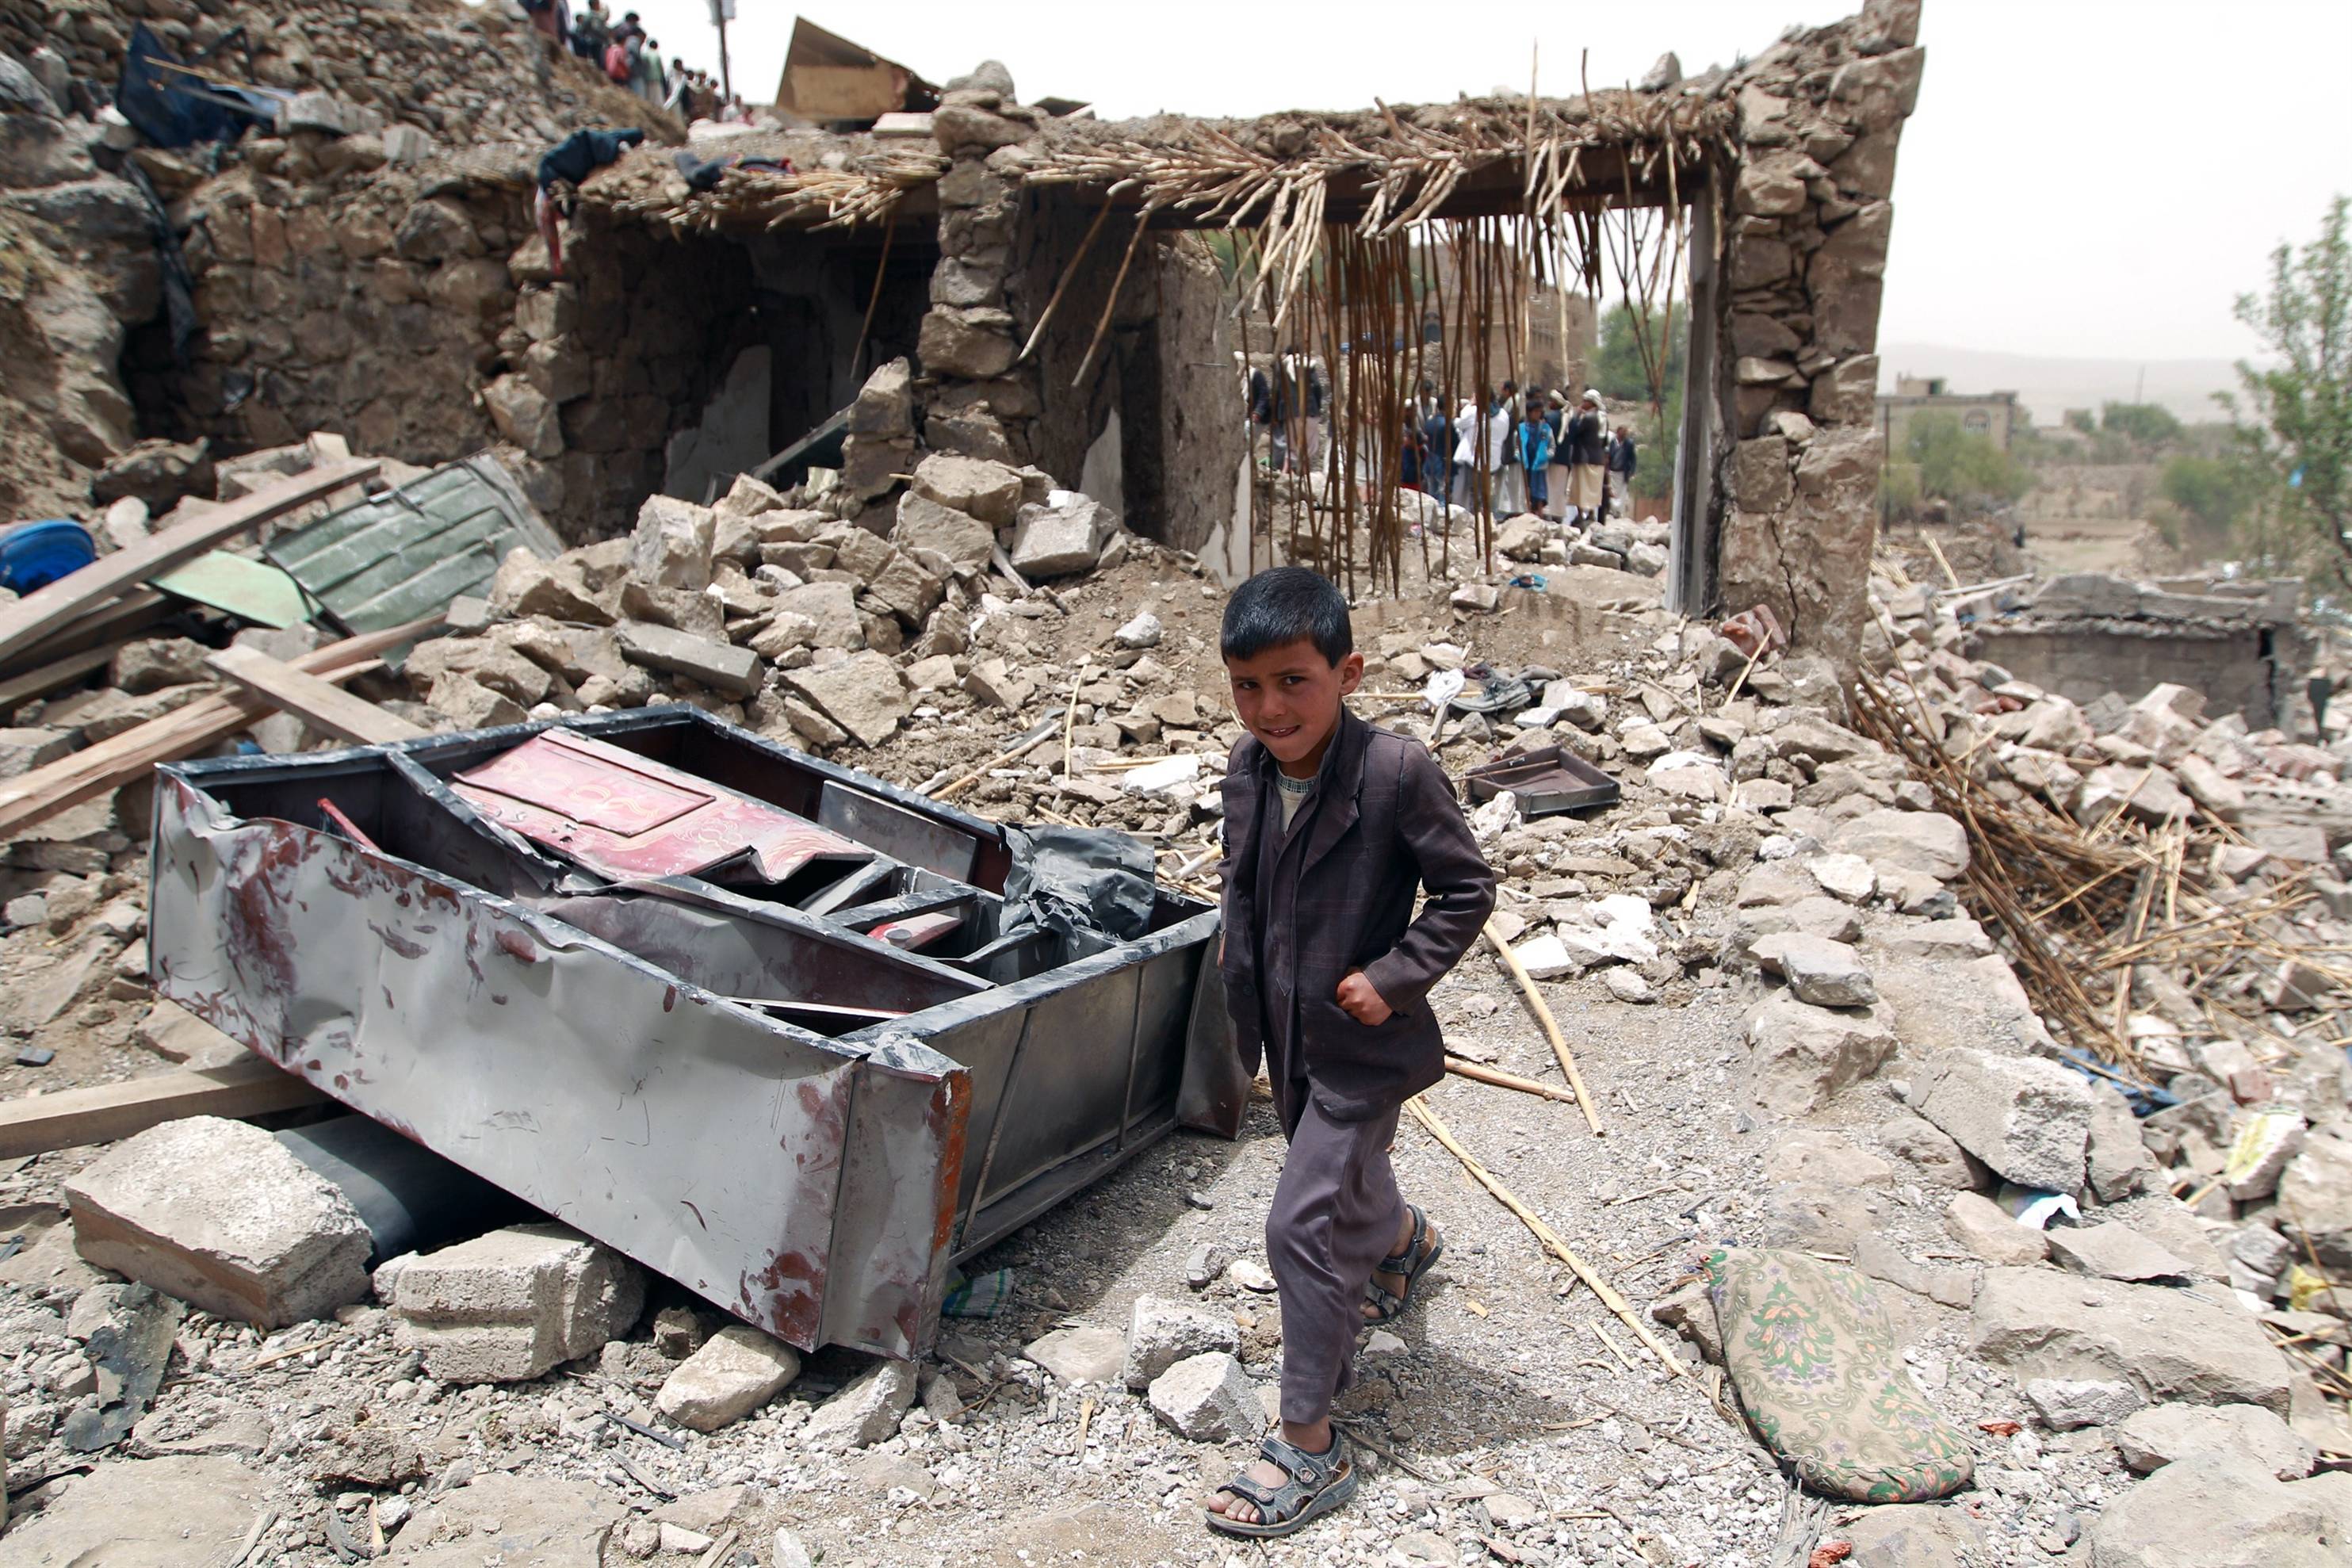 يورو نيوز: ما هو الدور البريطاني والأمريكي في الكارثة الإنسانية في اليمن؟